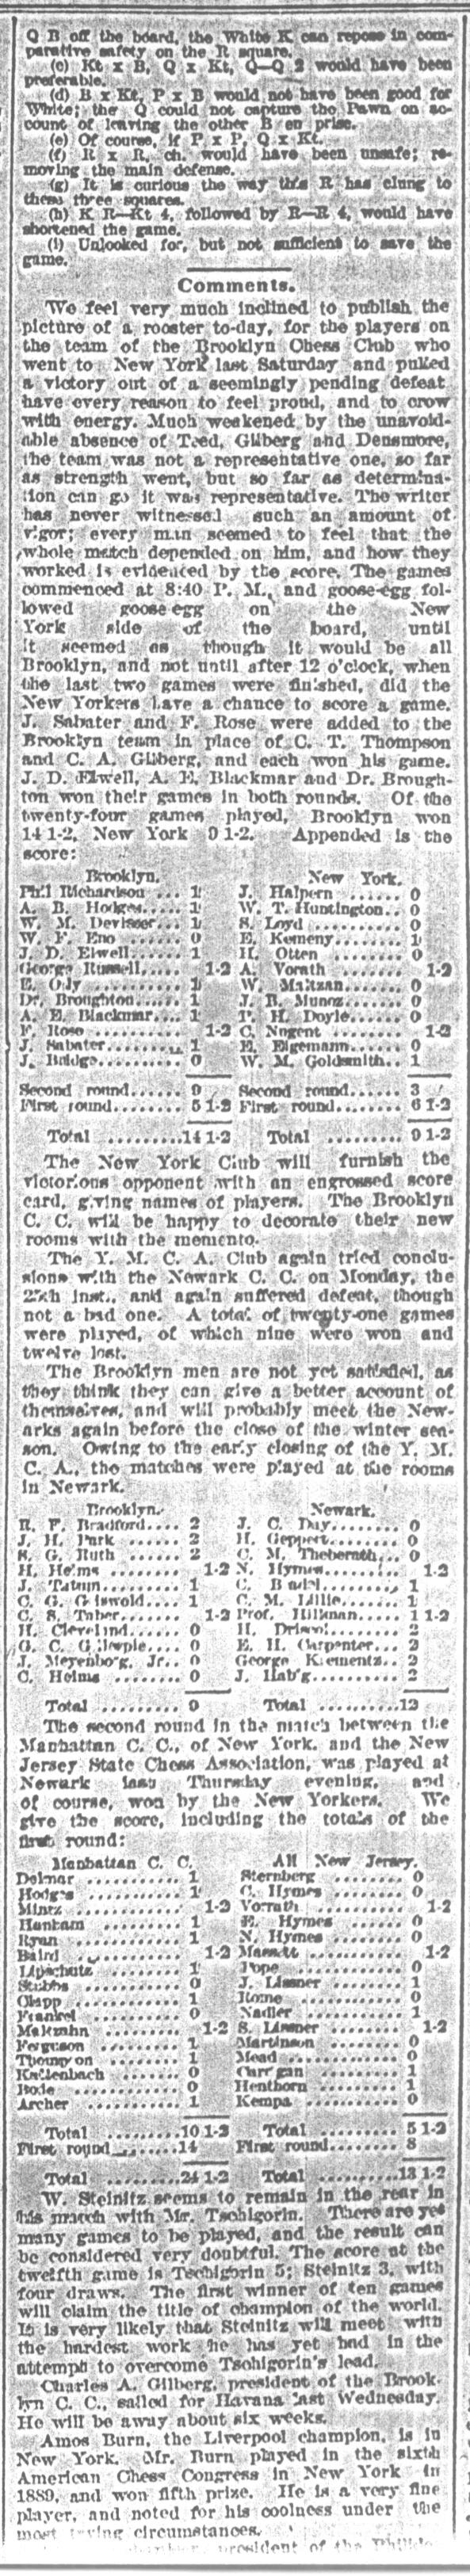 1892.01.30-03 Brooklyn Daily Standard-Union.jpg